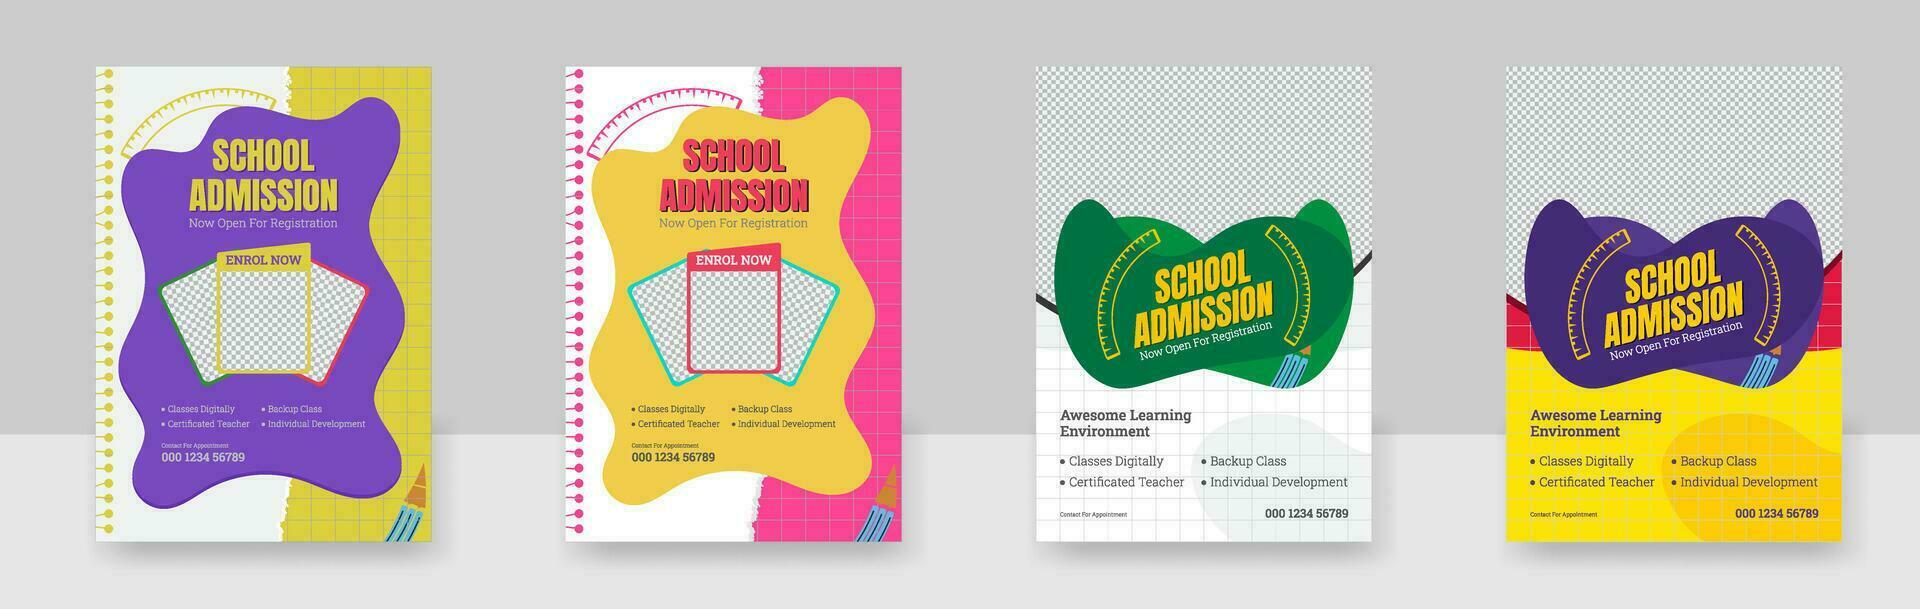 Junior Schule Eintritt Flyer, Schule Bildung Eintritt Flyer Poster Layout Vorlage, vektor